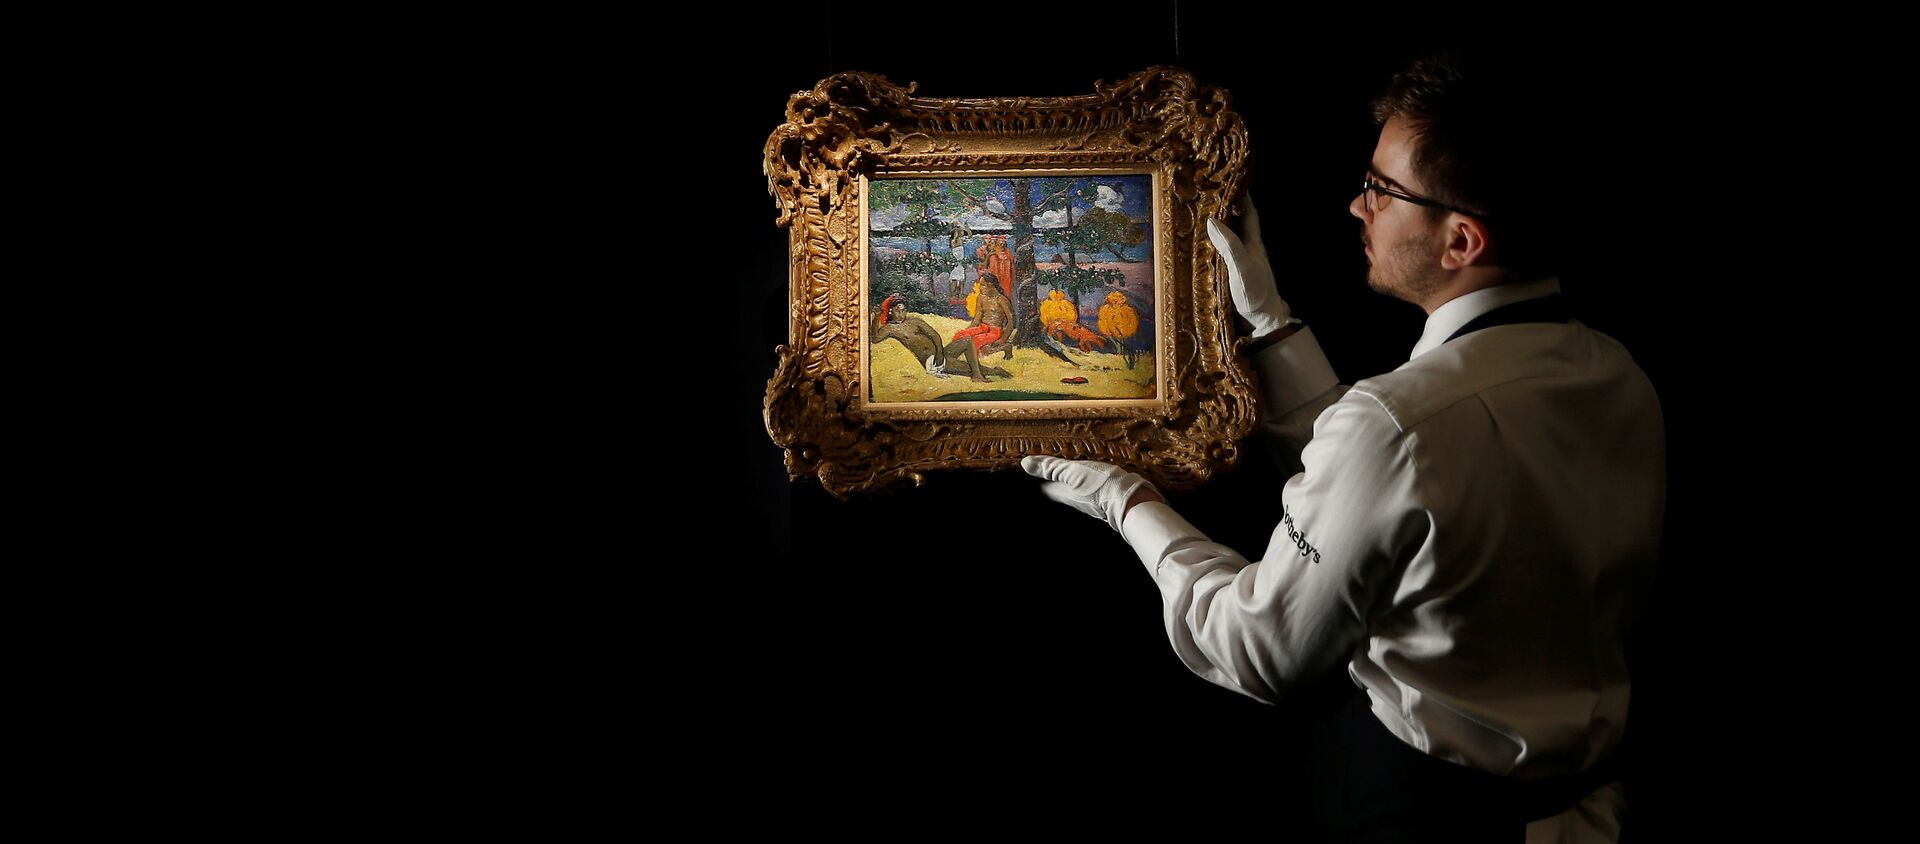 Поль Гоген Te Arii Vahine-La Femme aux mangos (II) - оценочная стоимость 7-10 миллионов фунтов стерлингов. - Sputnik Молдова, 1920, 26.02.2017